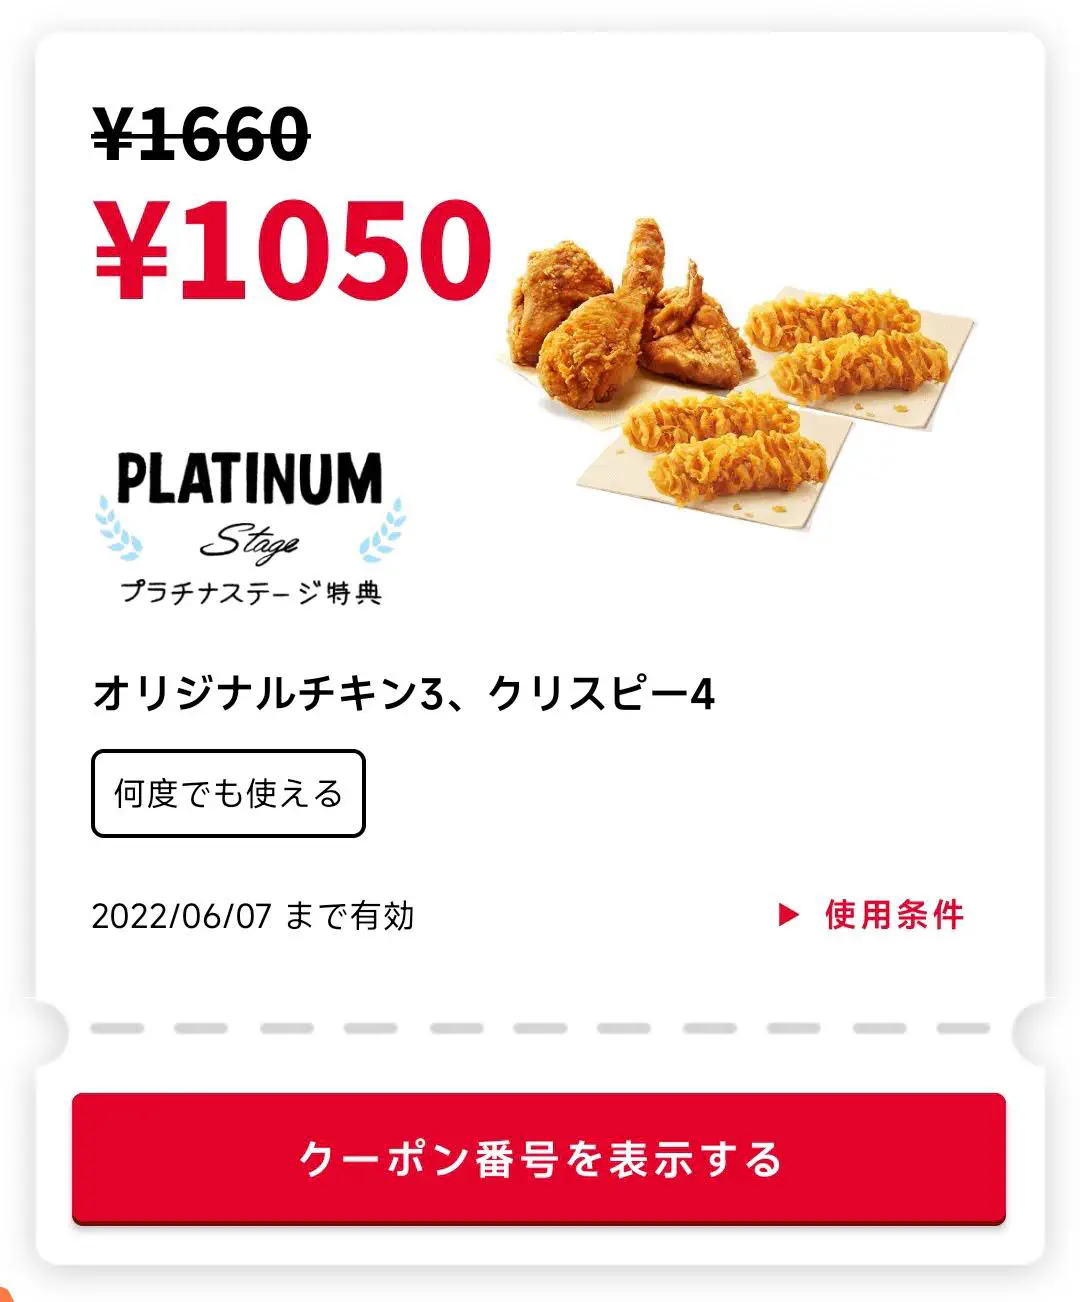 2022/06/07：吮指原味鸡x3 + 松脆鸡肉x4 = 1050 日元